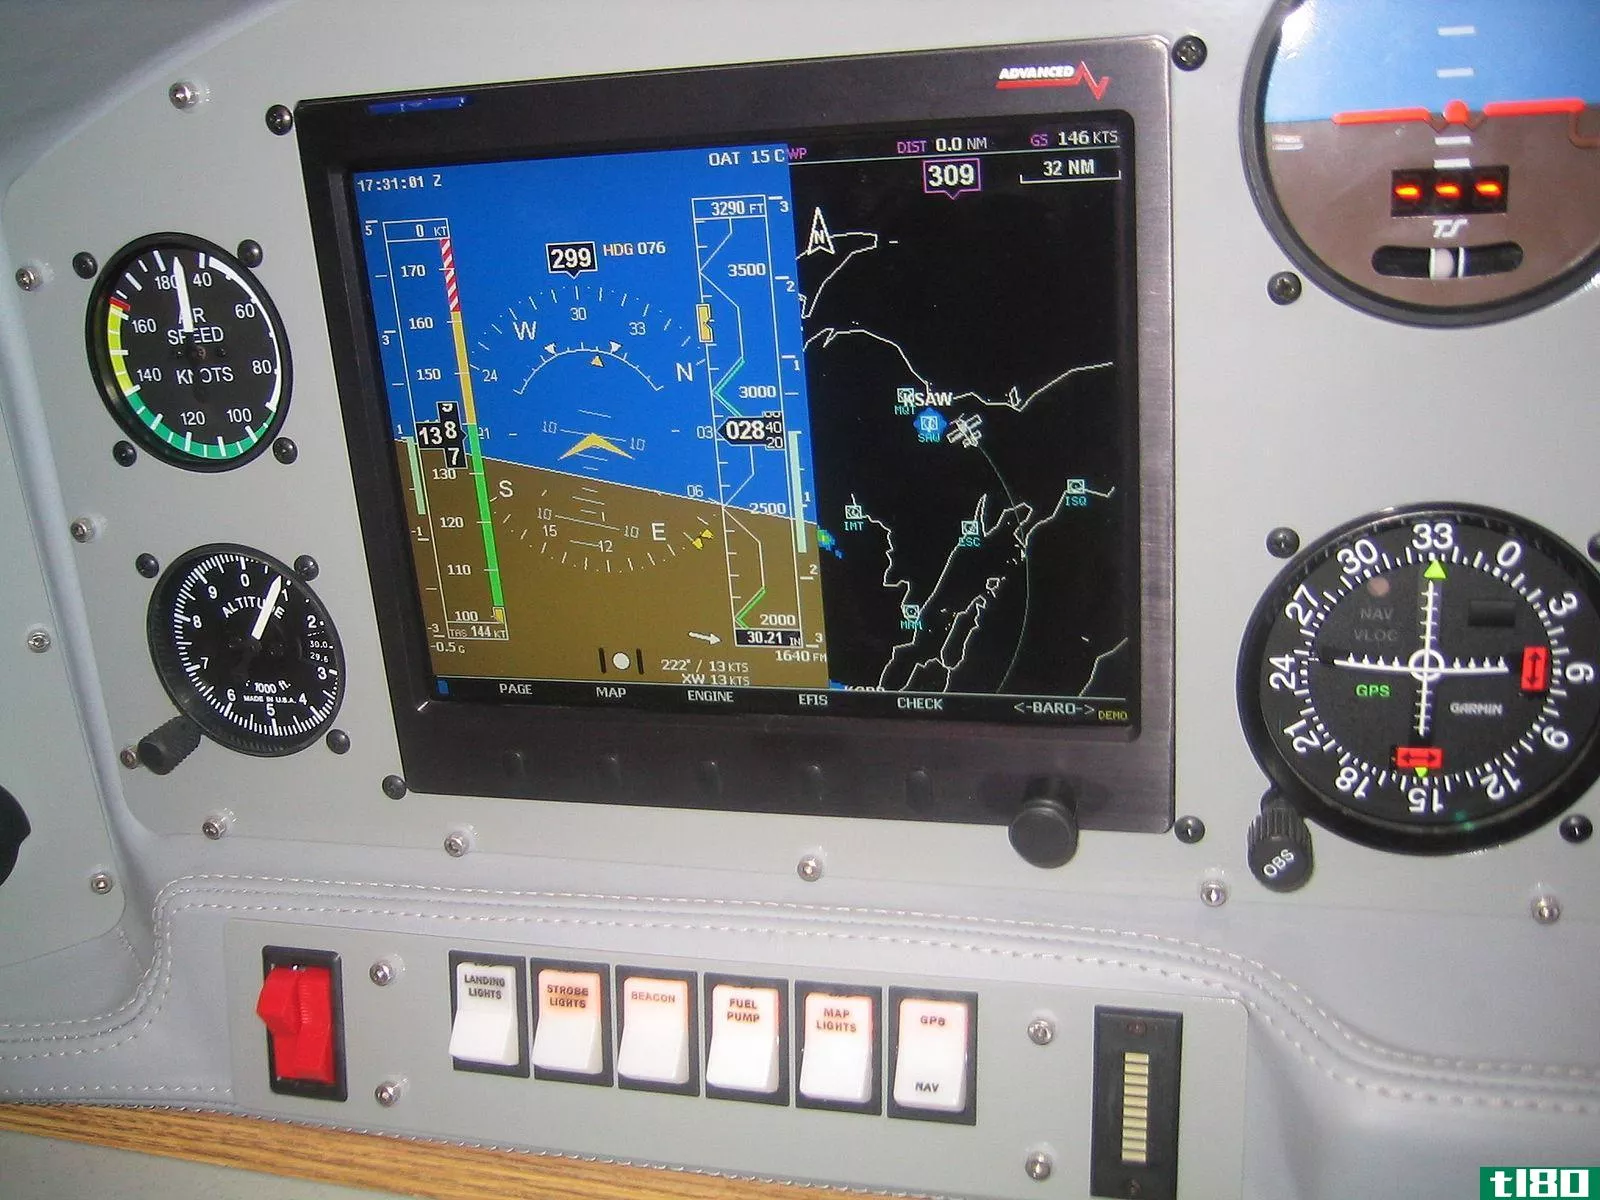 飞机导航gps(aircraft navigation gps)和全向信标(vor)的区别